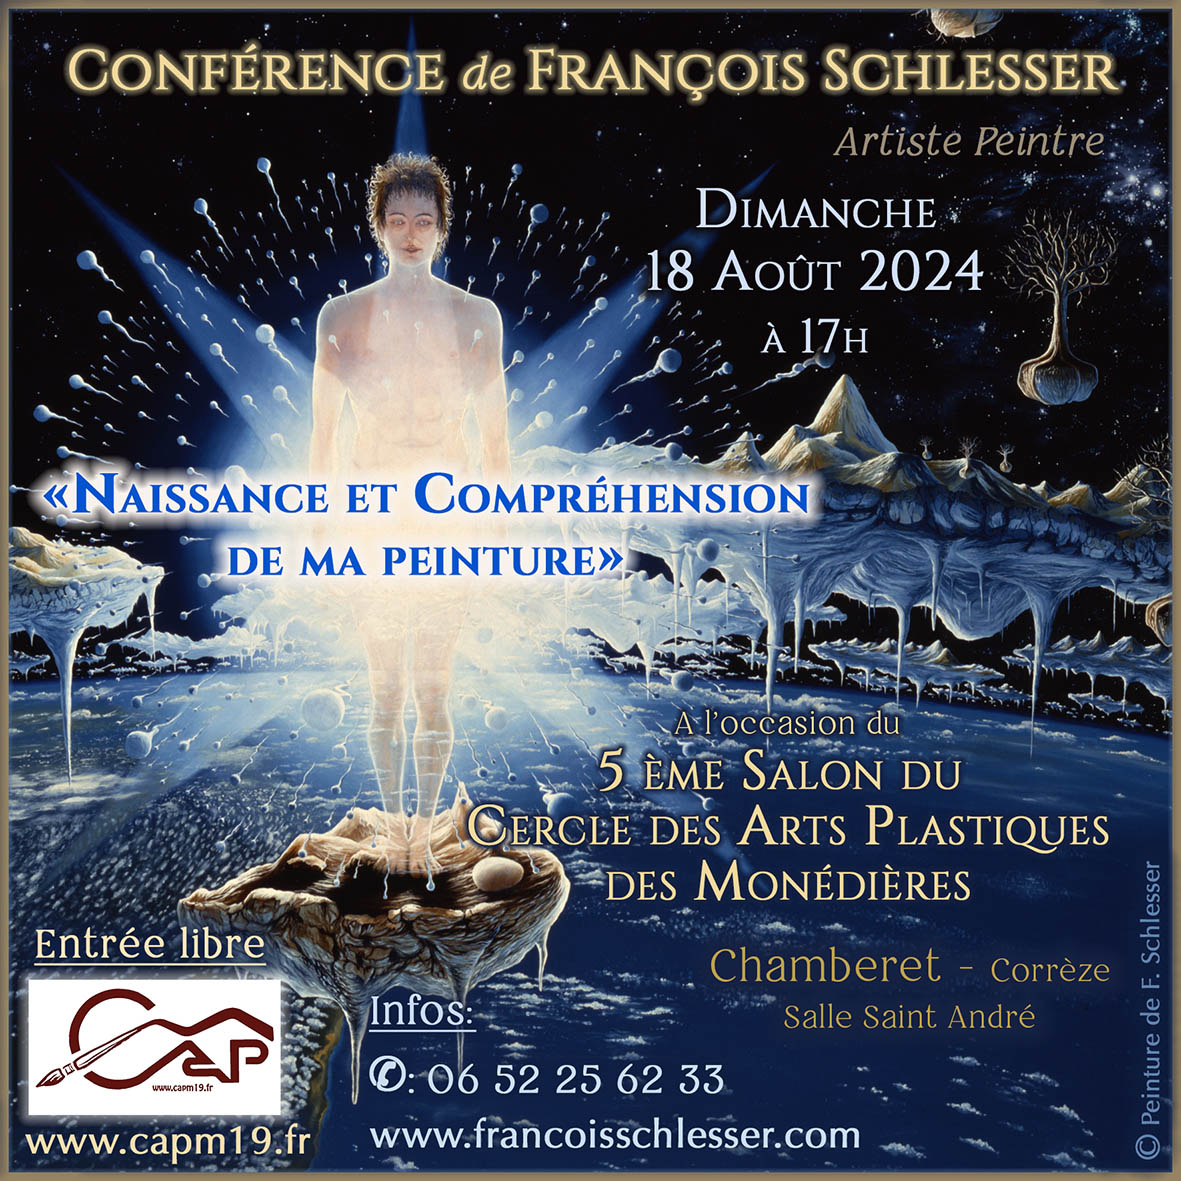 Conférence de François Schlesser - "Naissance et Compréhension de ma peinture"  Dimanche 18 août 2024 à 17H - Salle Saint-André - Chamberet 19